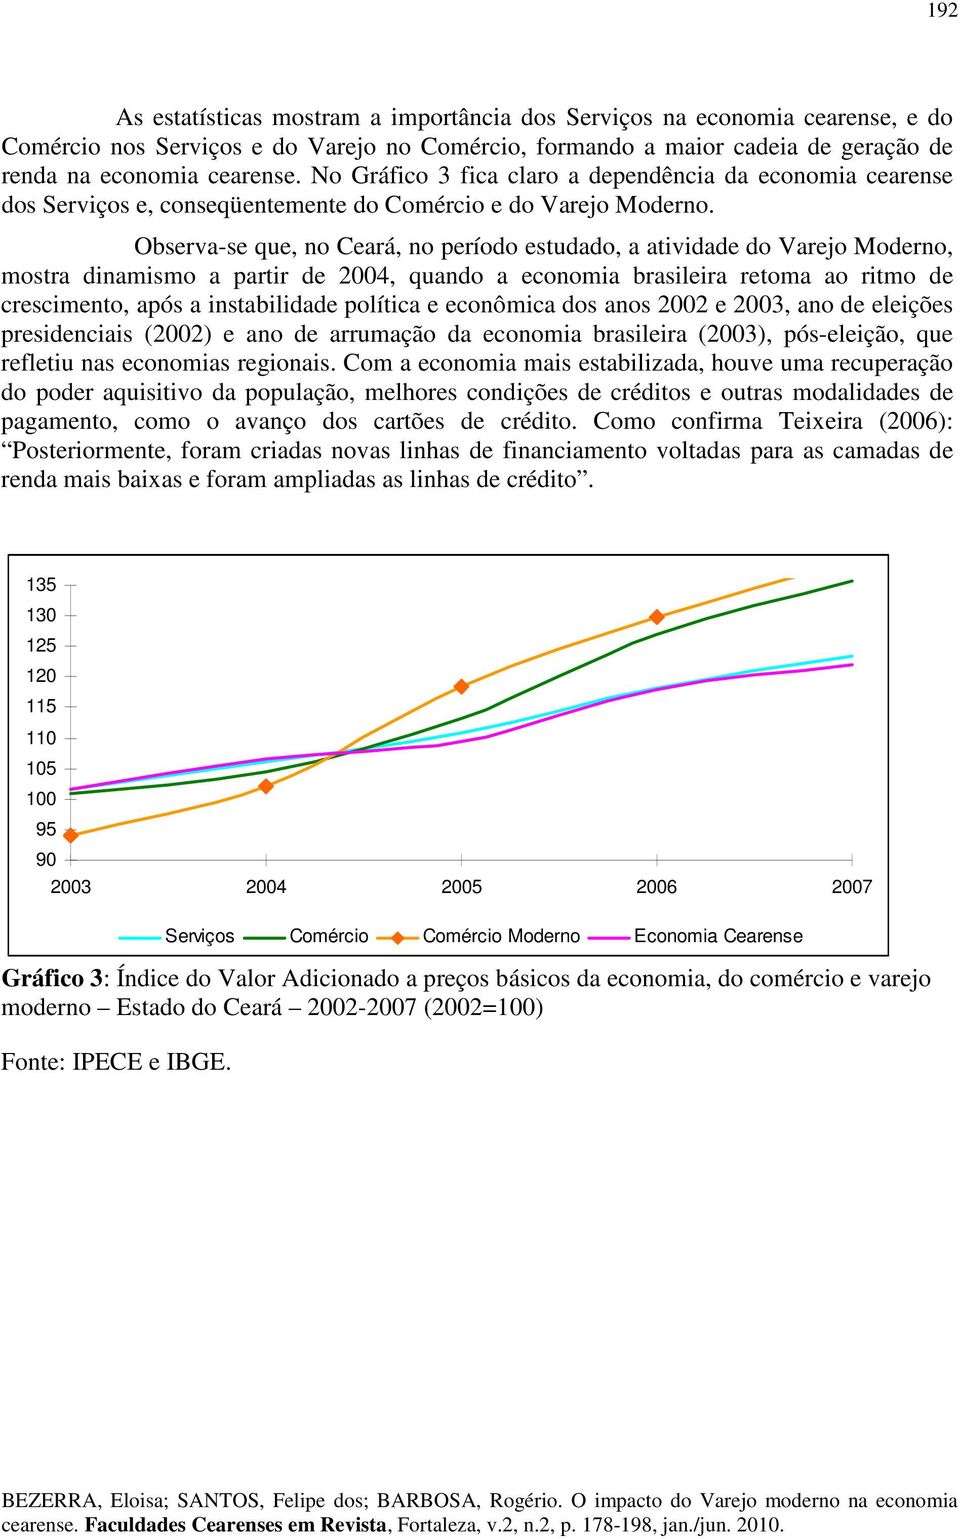 Observa-se que, no Ceará, no período estudado, a atvdade do Varejo Moderno, mostra dnamsmo a partr de 2004, quando a economa braslera retoma ao rtmo de crescmento, após a nstabldade polítca e